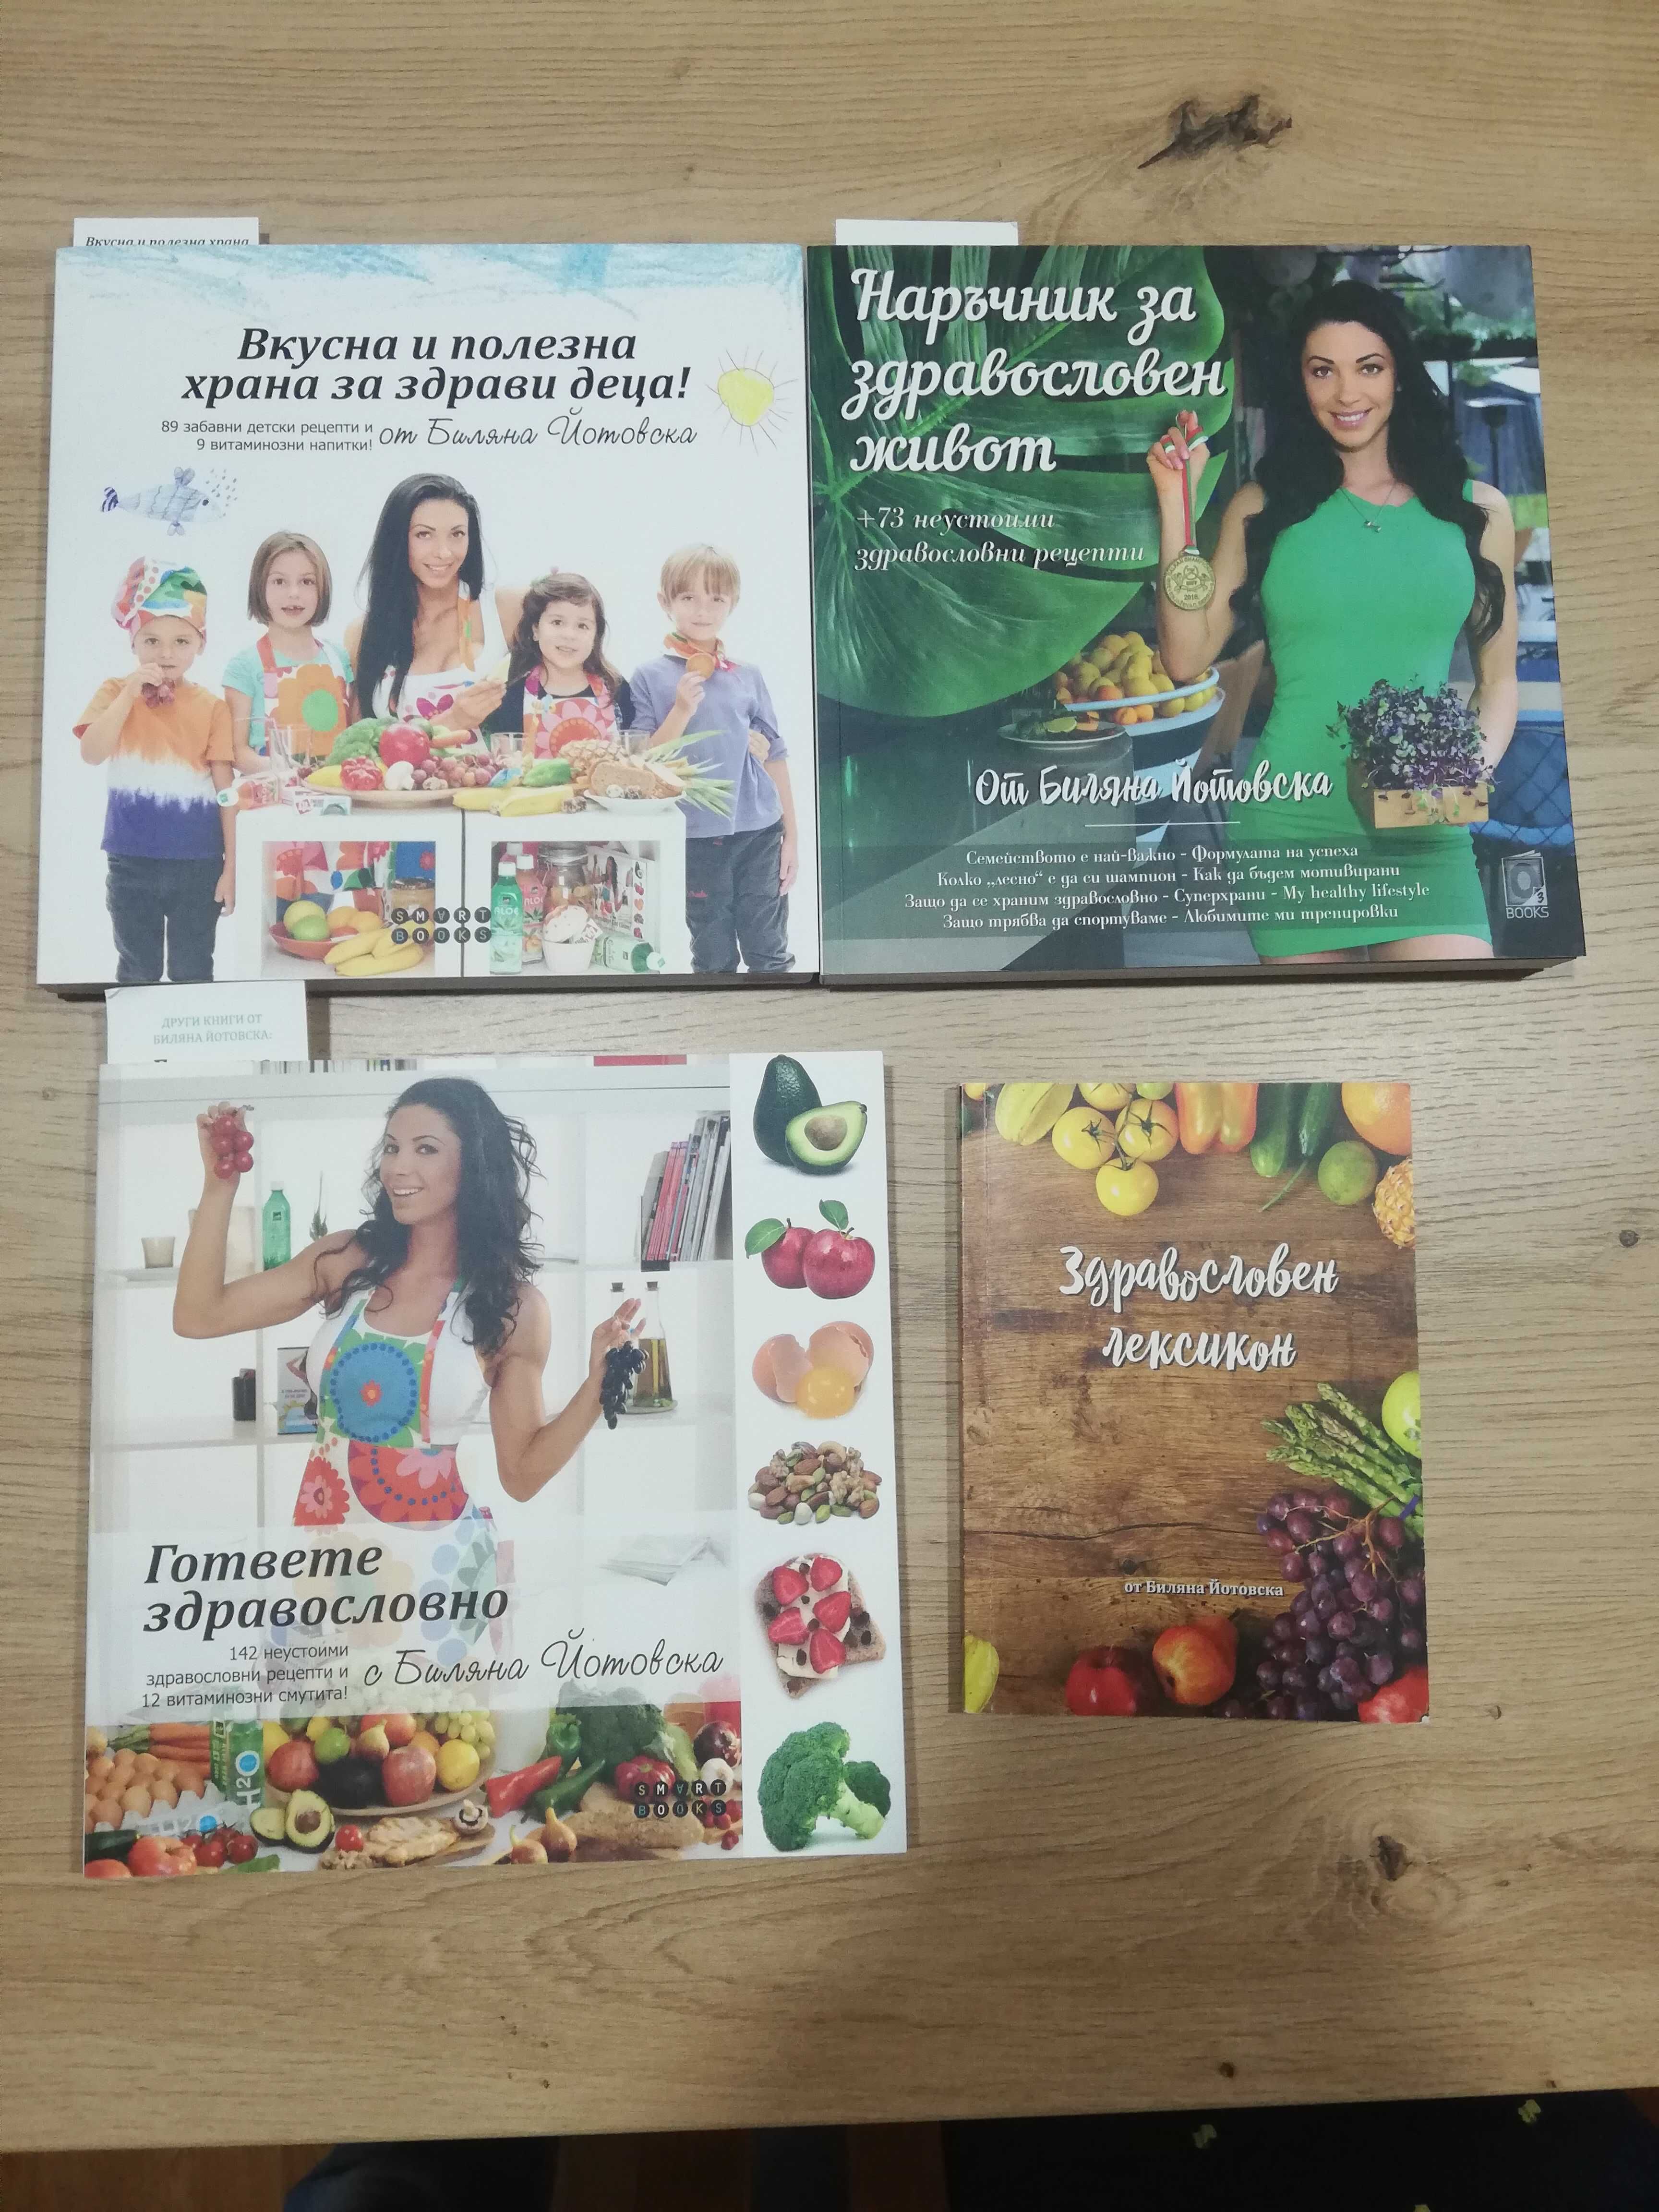 Книги за здравословно готвене - Биляна Йотовка